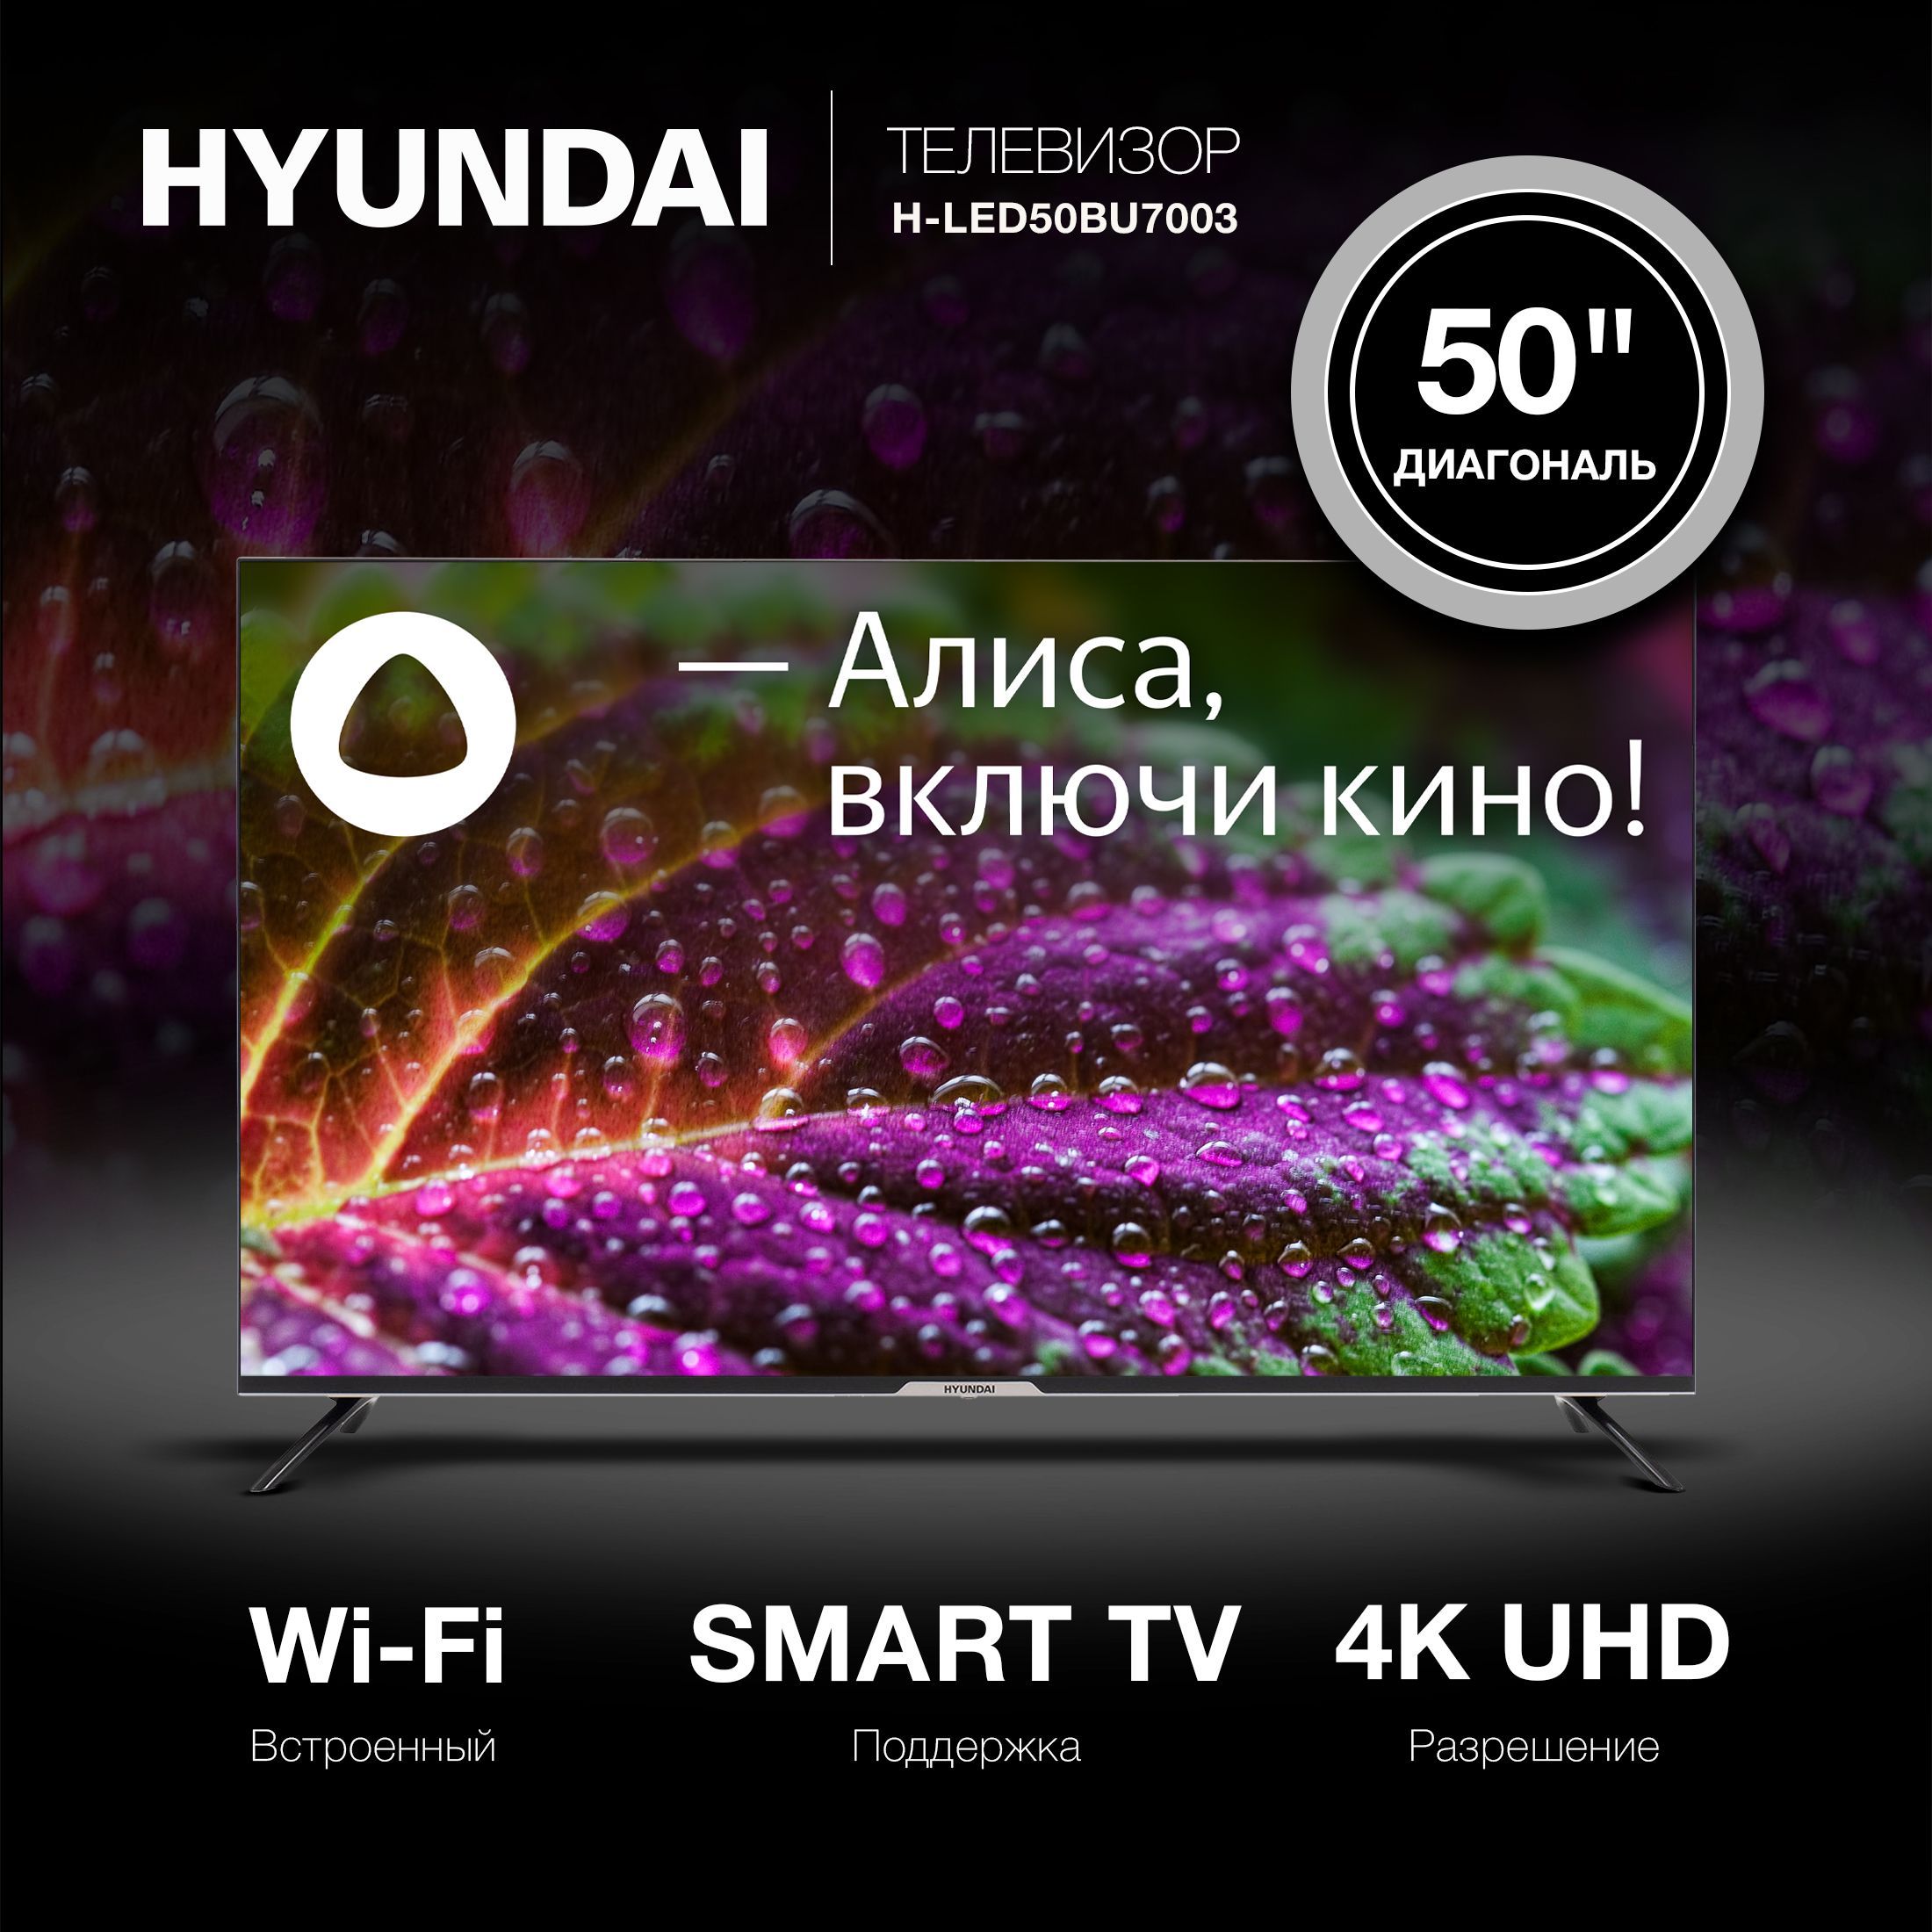 Led43bu7003 телевизор hyundai. Hyundai h-led43bu7003. Hyundai h-led32bs5003. H-led55bu7003. Hyundai 55 h-led55bu7003.